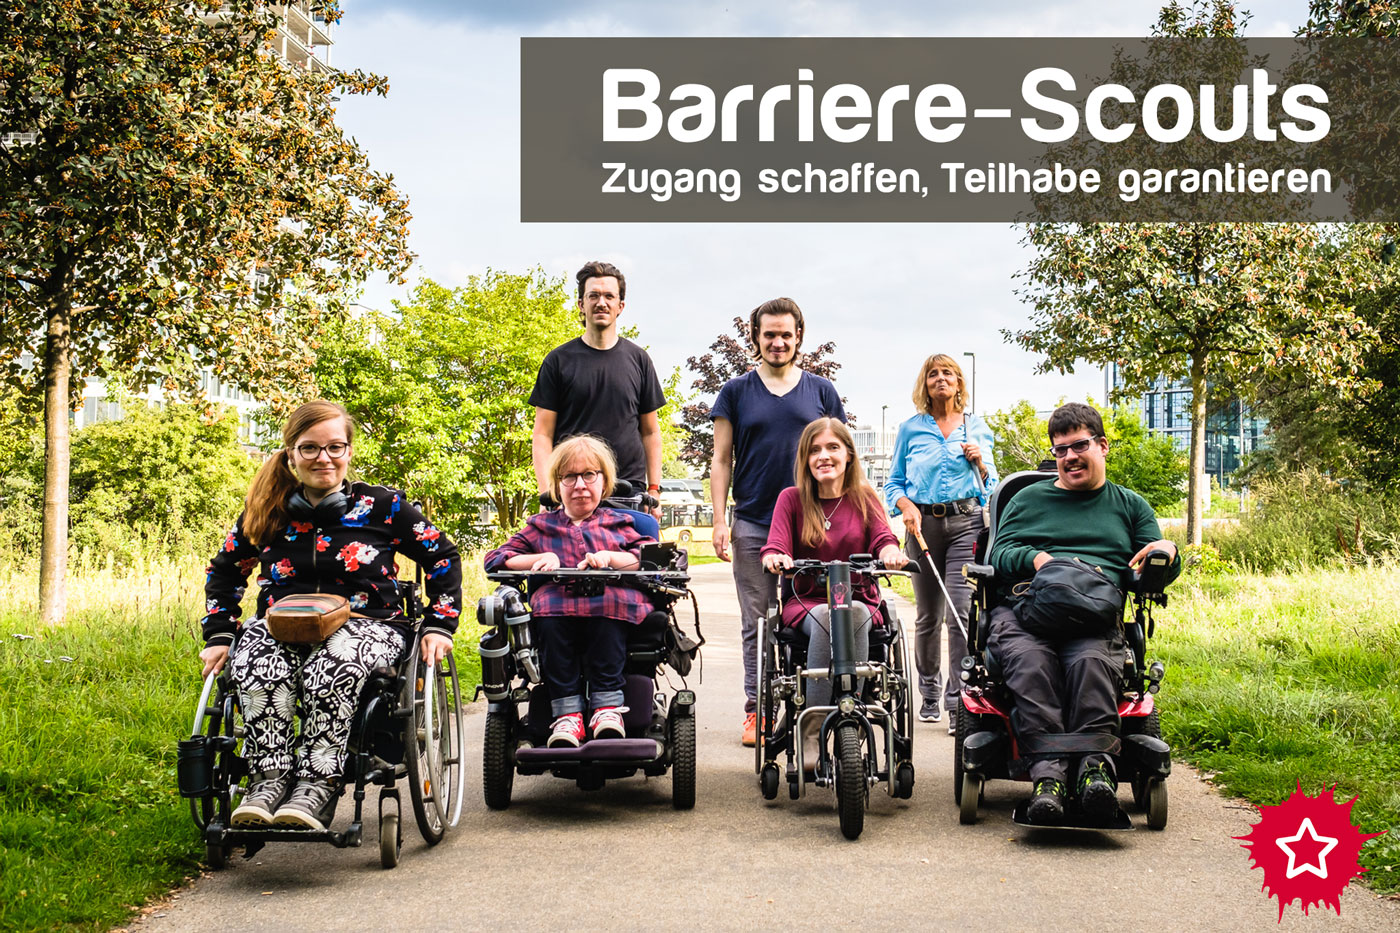 Im Bild sind mehrere Personen zu sehen. Vier fahren einen Rollstuhl, eine Person benutzt einen Langstock. Über den Personen steht die Überschrift: "Barriere-Scouts. Zugang schaffen, Teilhabe garantieren."